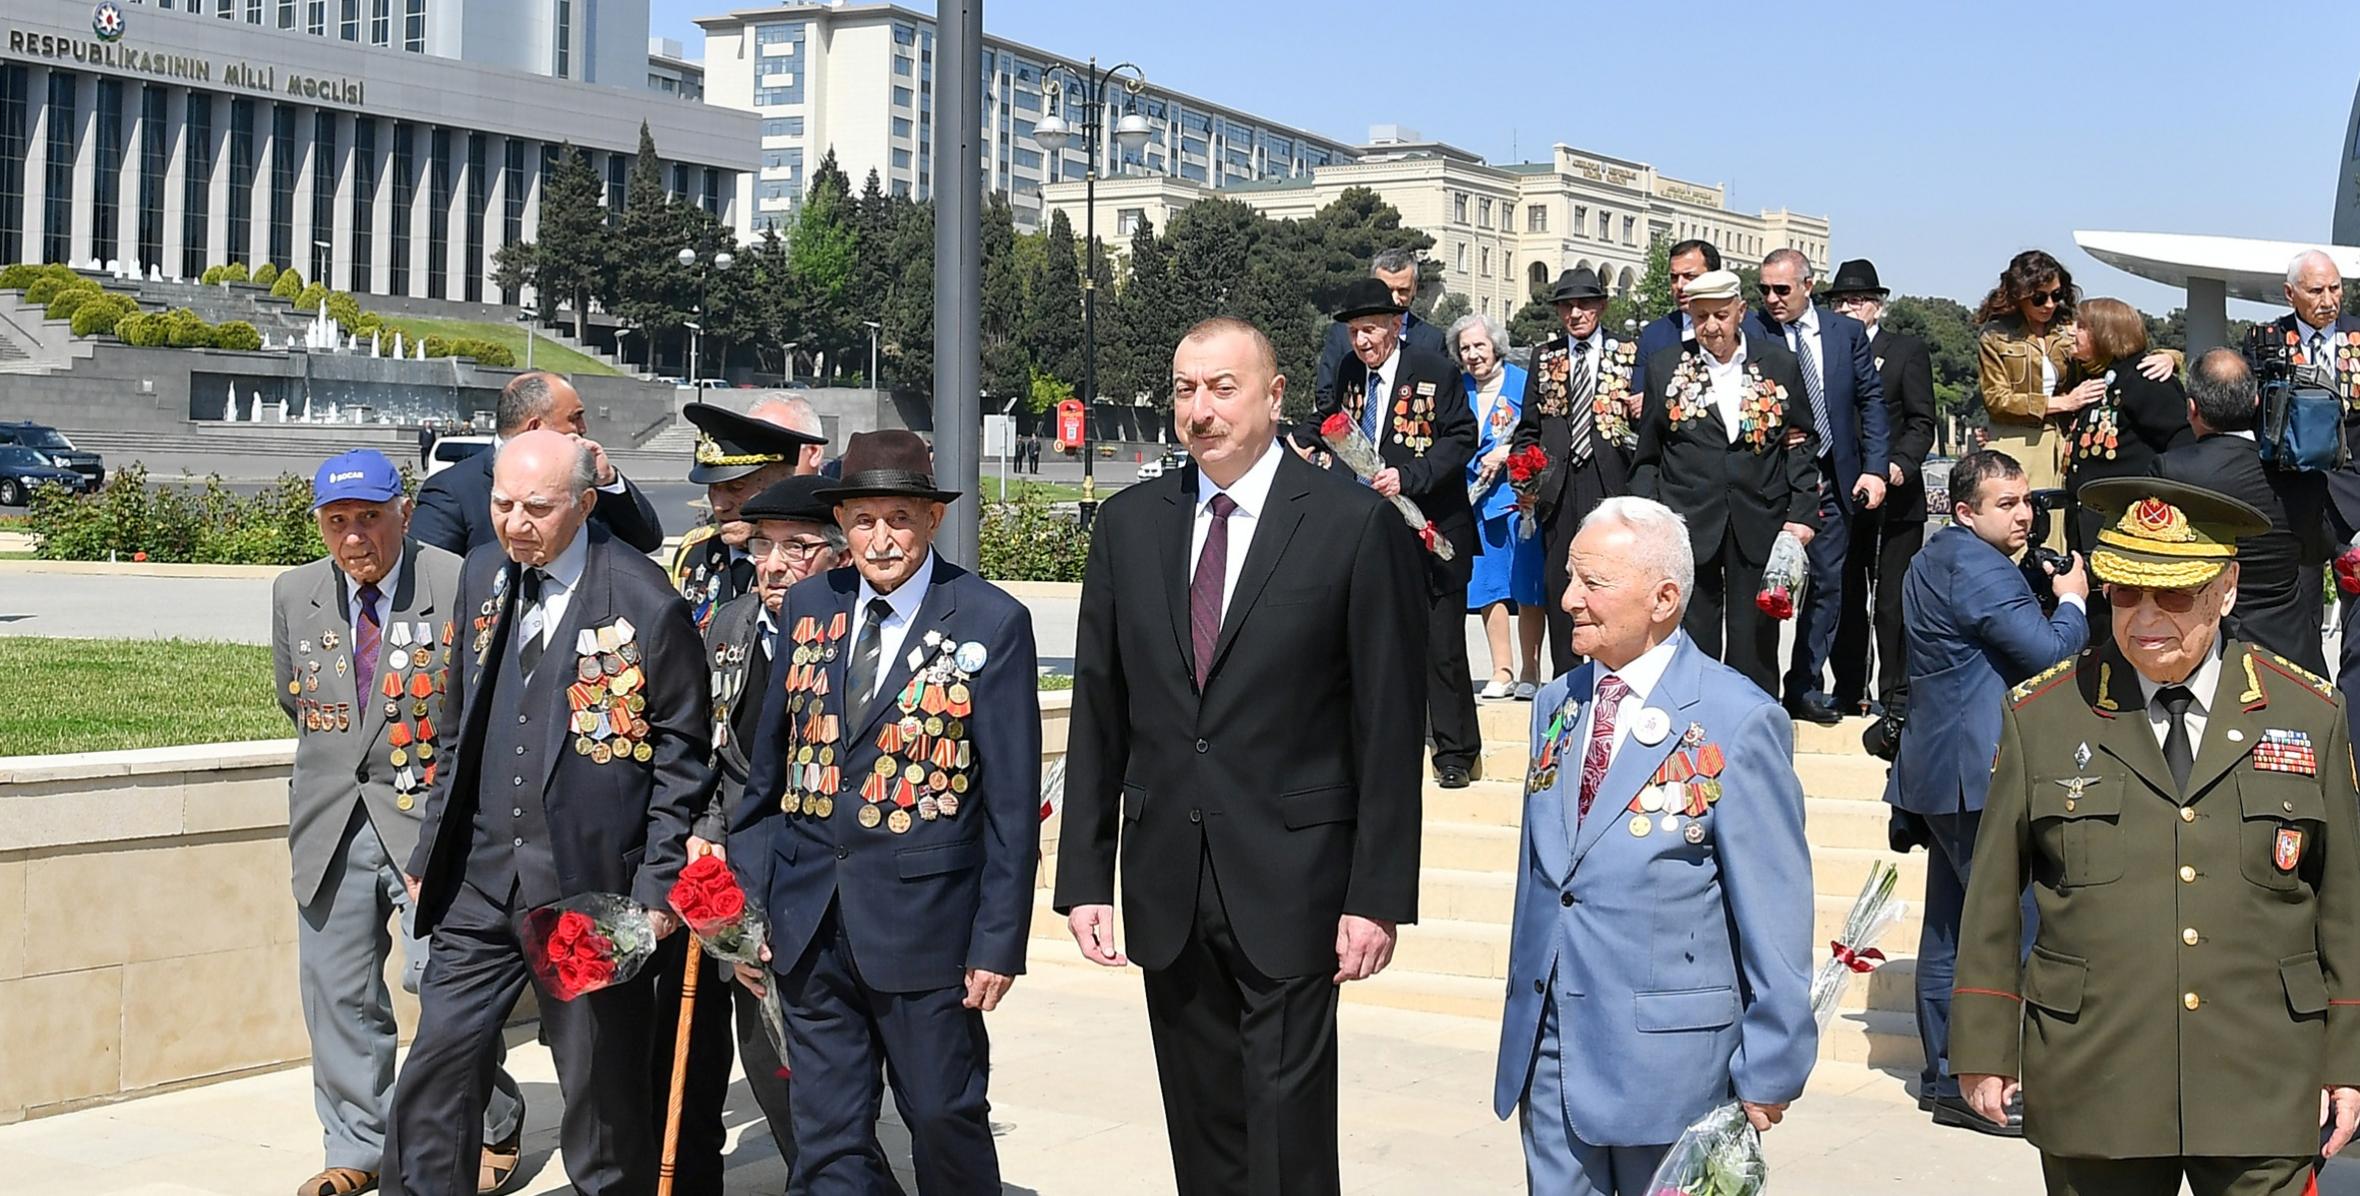 Ильхам Алиев принял участие в церемонии, проведенной в Баку по случаю 9 Мая – Дня Победы